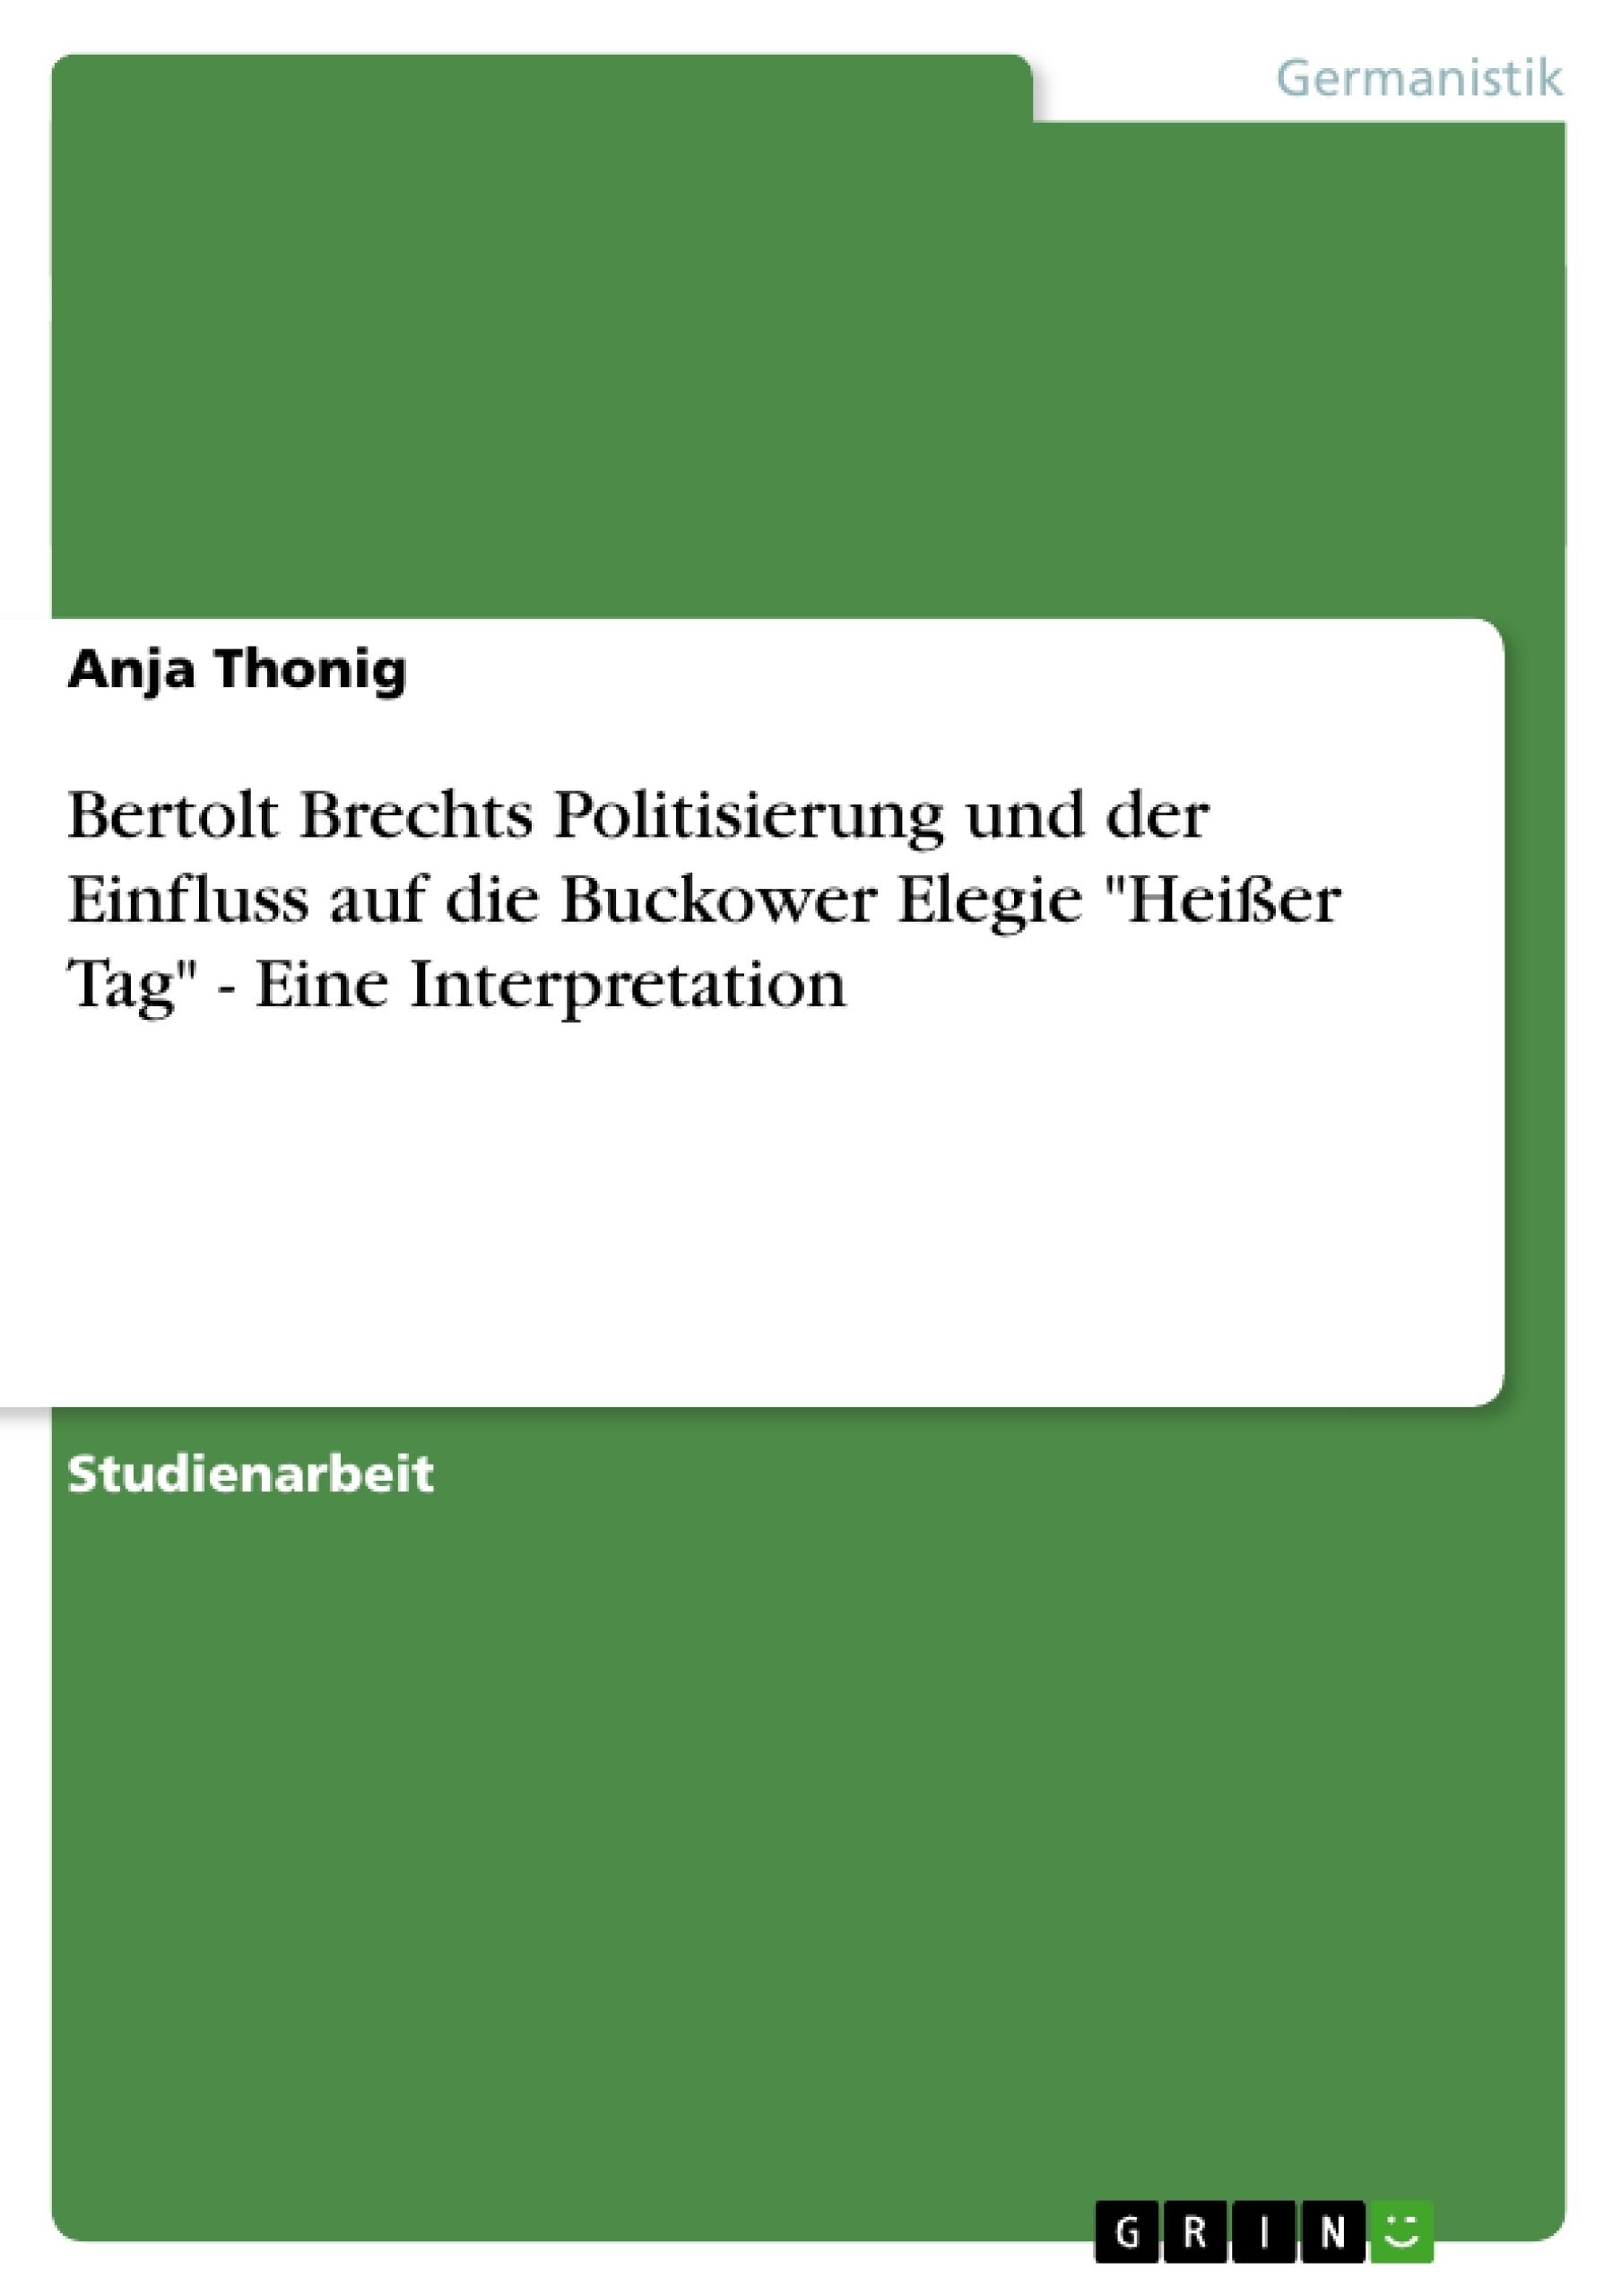 Título: Bertolt Brechts Politisierung und der Einfluss auf die Buckower Elegie "Heißer Tag" - Eine Interpretation